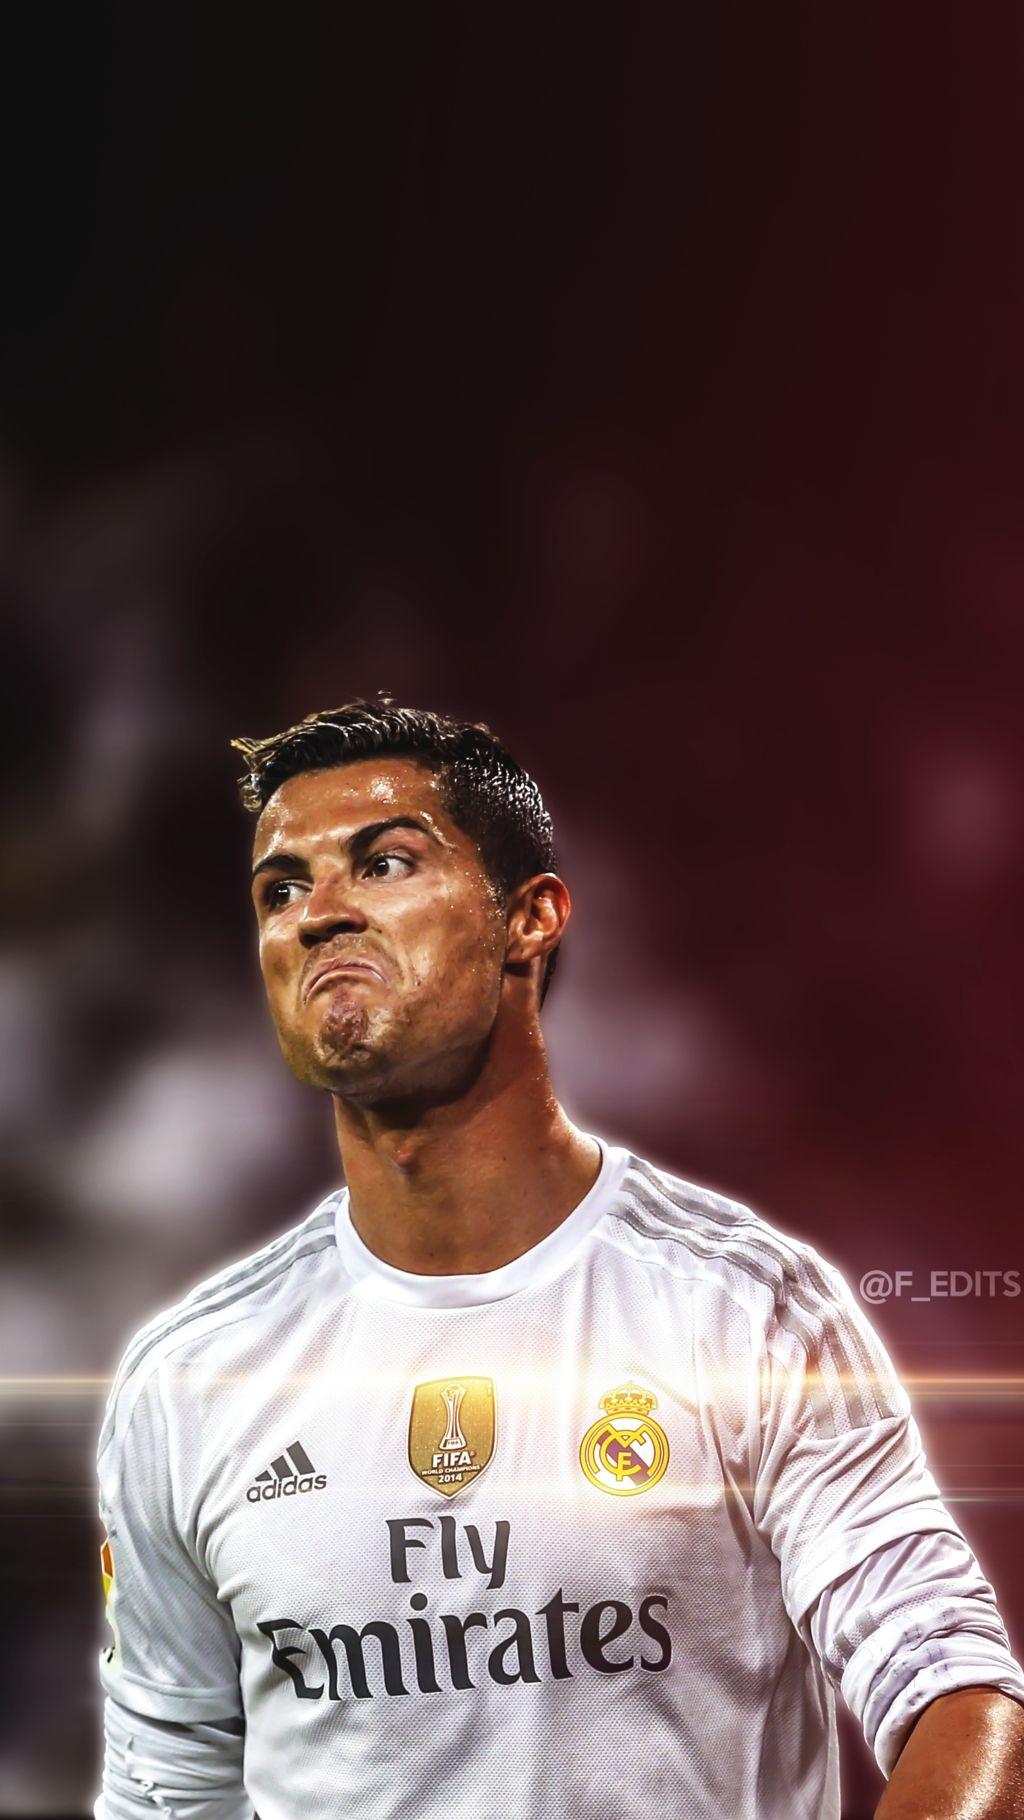 Cristiano Ronaldo Wallpaper For iPhone 5